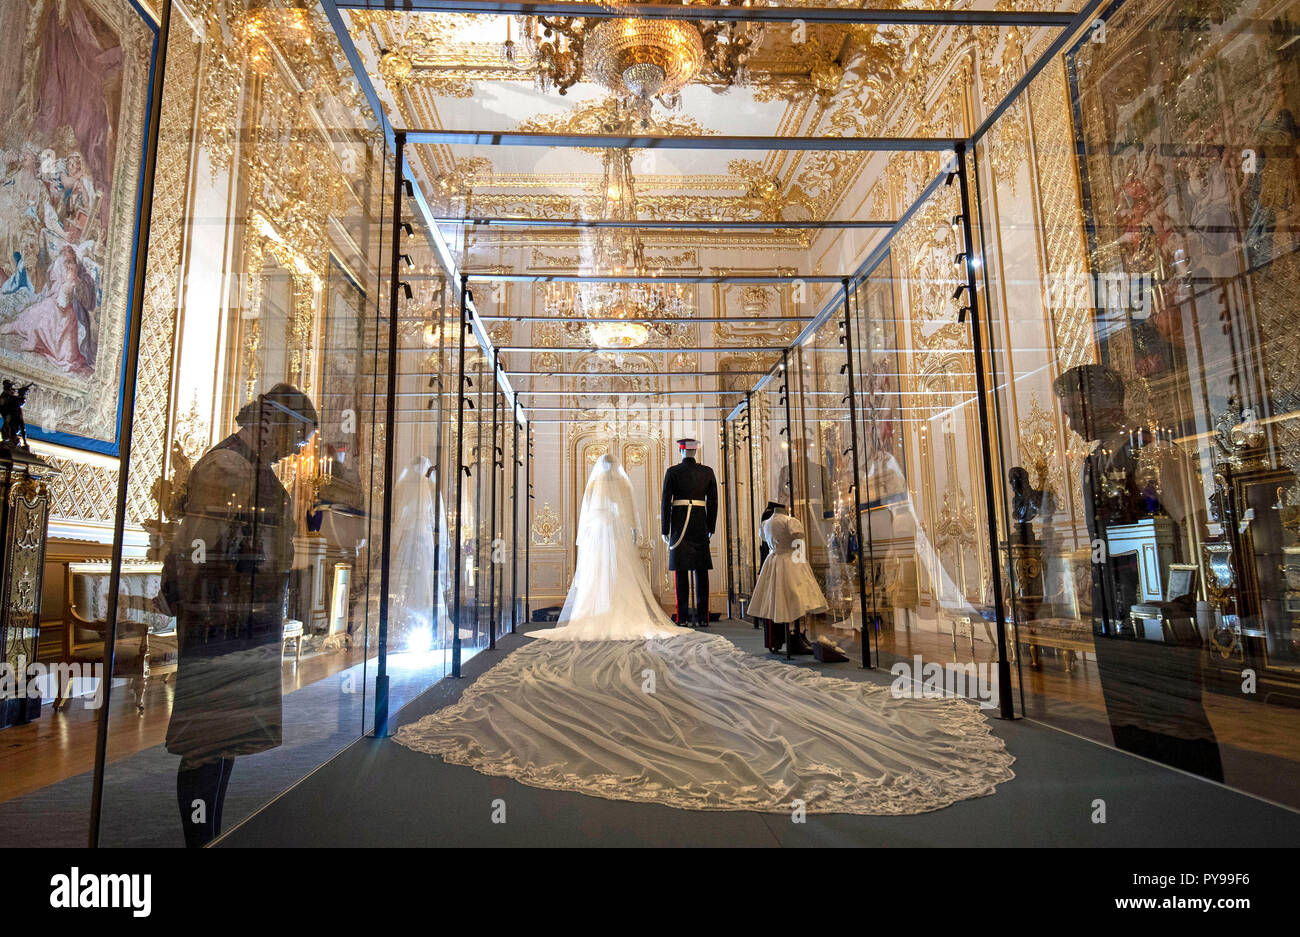 Mitarbeiter von Schloss Windsor stand neben der Hochzeit Ausstattungen des Herzogs und der Herzogin von Sussex, die in der Grand Salon im Schloss Windsor, Berkshire gegangen, als Teil der Ausstellung, eine königliche Hochzeit: der Herzog und die Herzogin von Sussex, die von 26. Oktober bis 6. Januar 2019 ausführen. Stockfoto